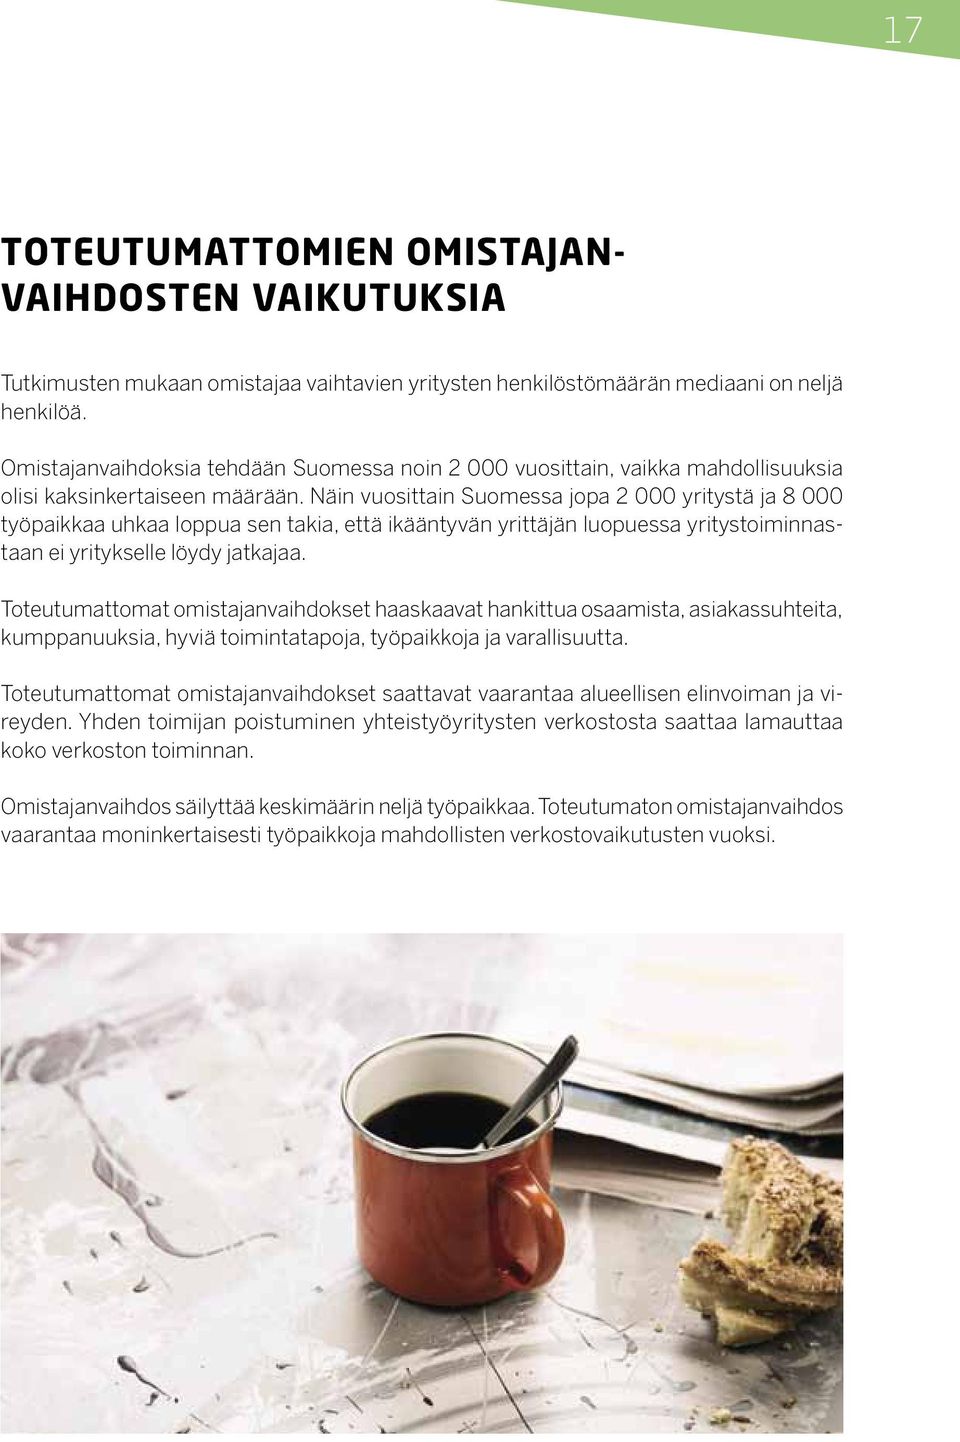 Näin vuosittain Suomessa jopa 2 000 yritystä ja 8 000 työpaikkaa uhkaa loppua sen takia, että ikääntyvän yrittäjän luopuessa yritystoiminnastaan ei yritykselle löydy jatkajaa.